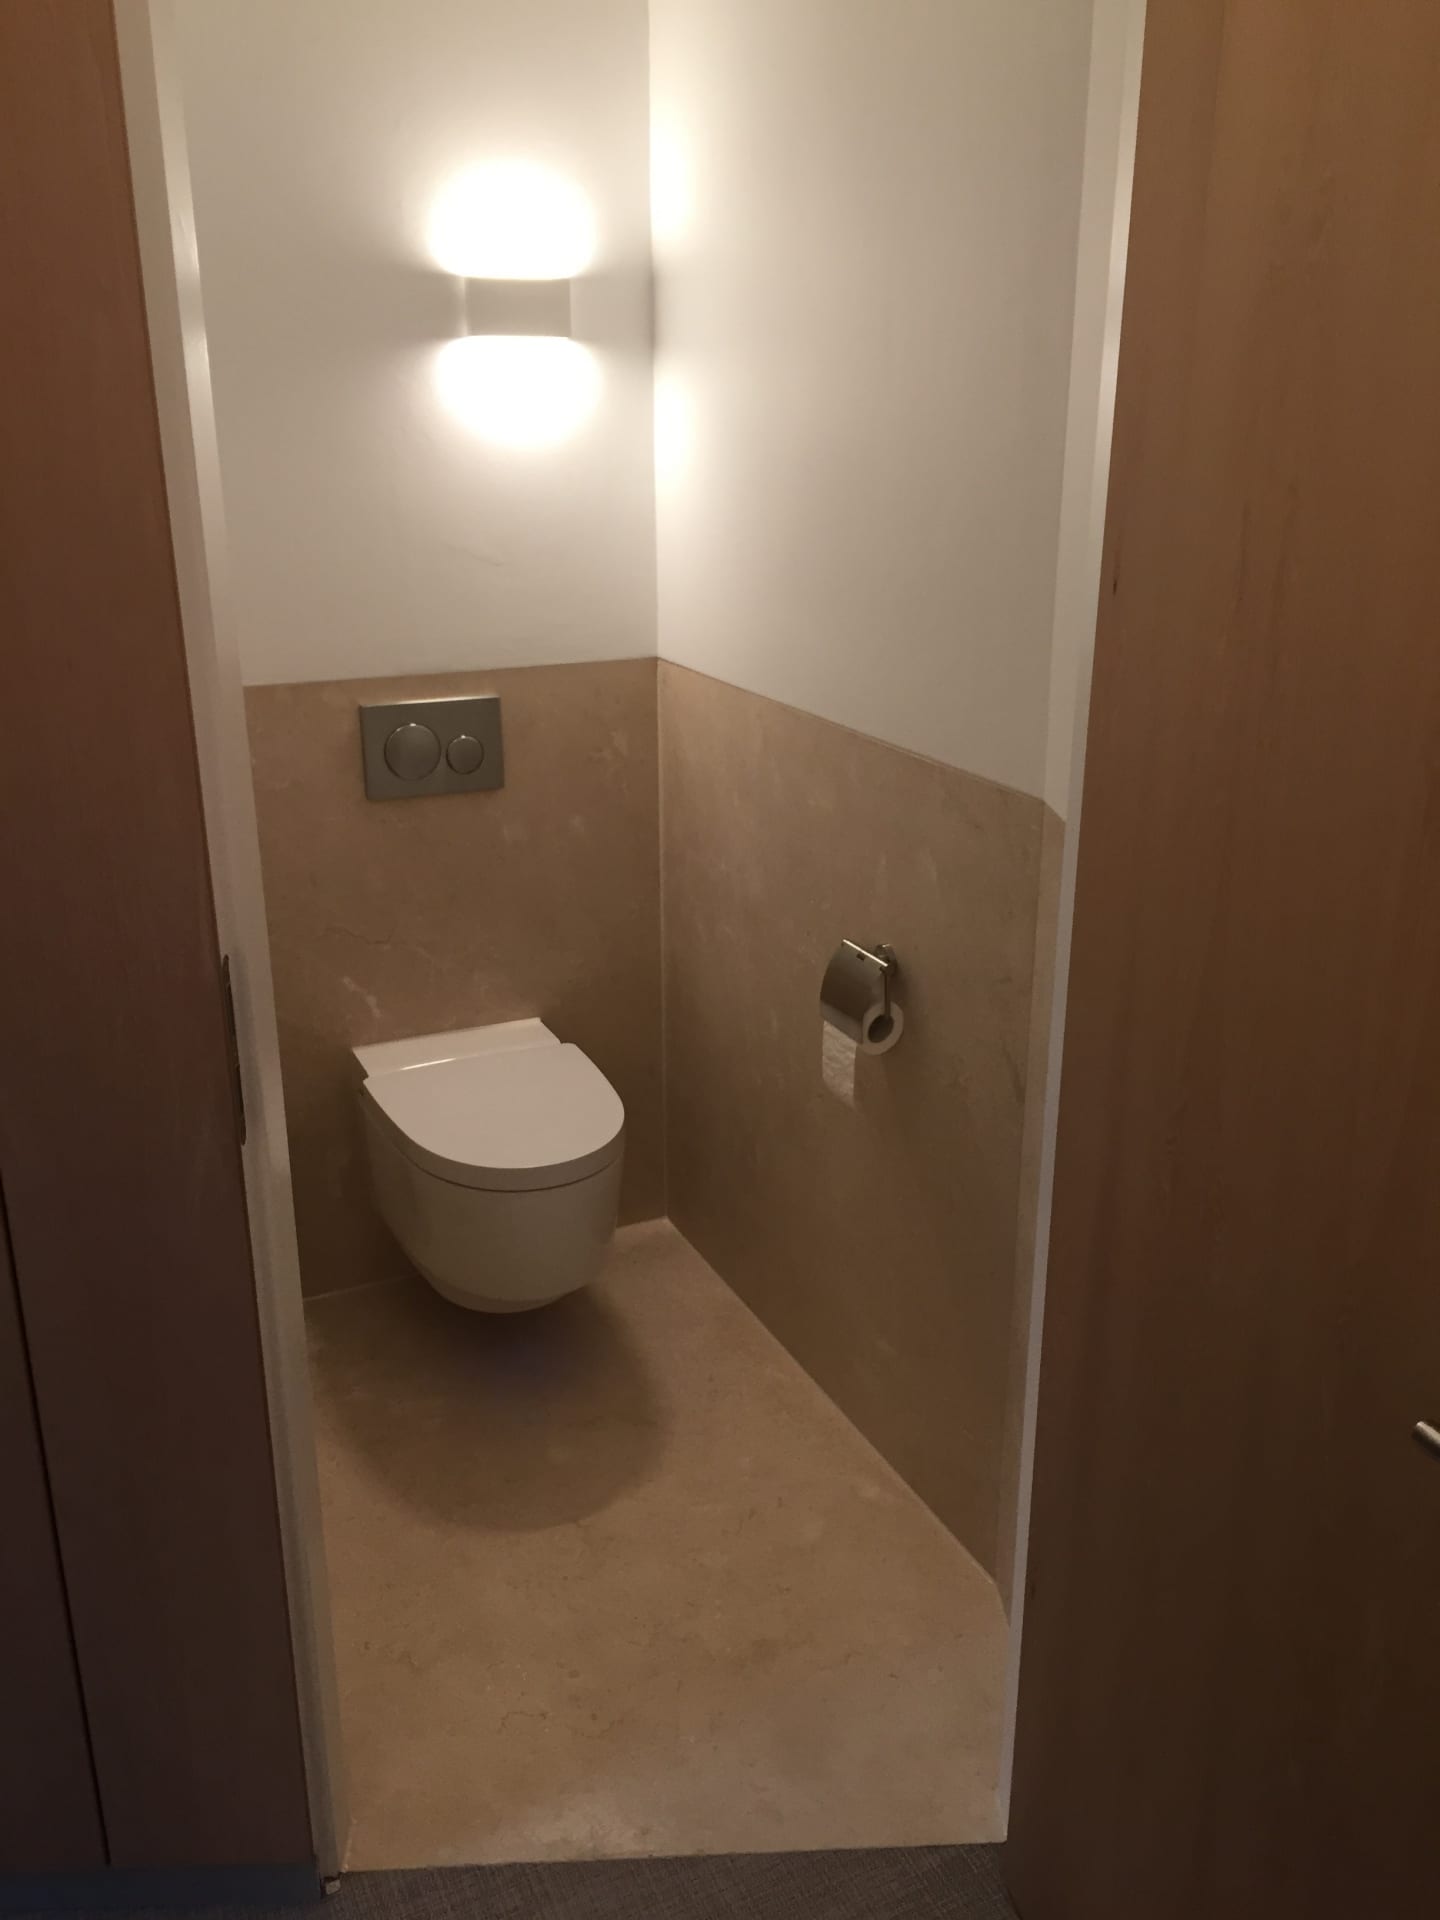 EERNEWOUDE – Badkamer en toilet in Crema Marfil